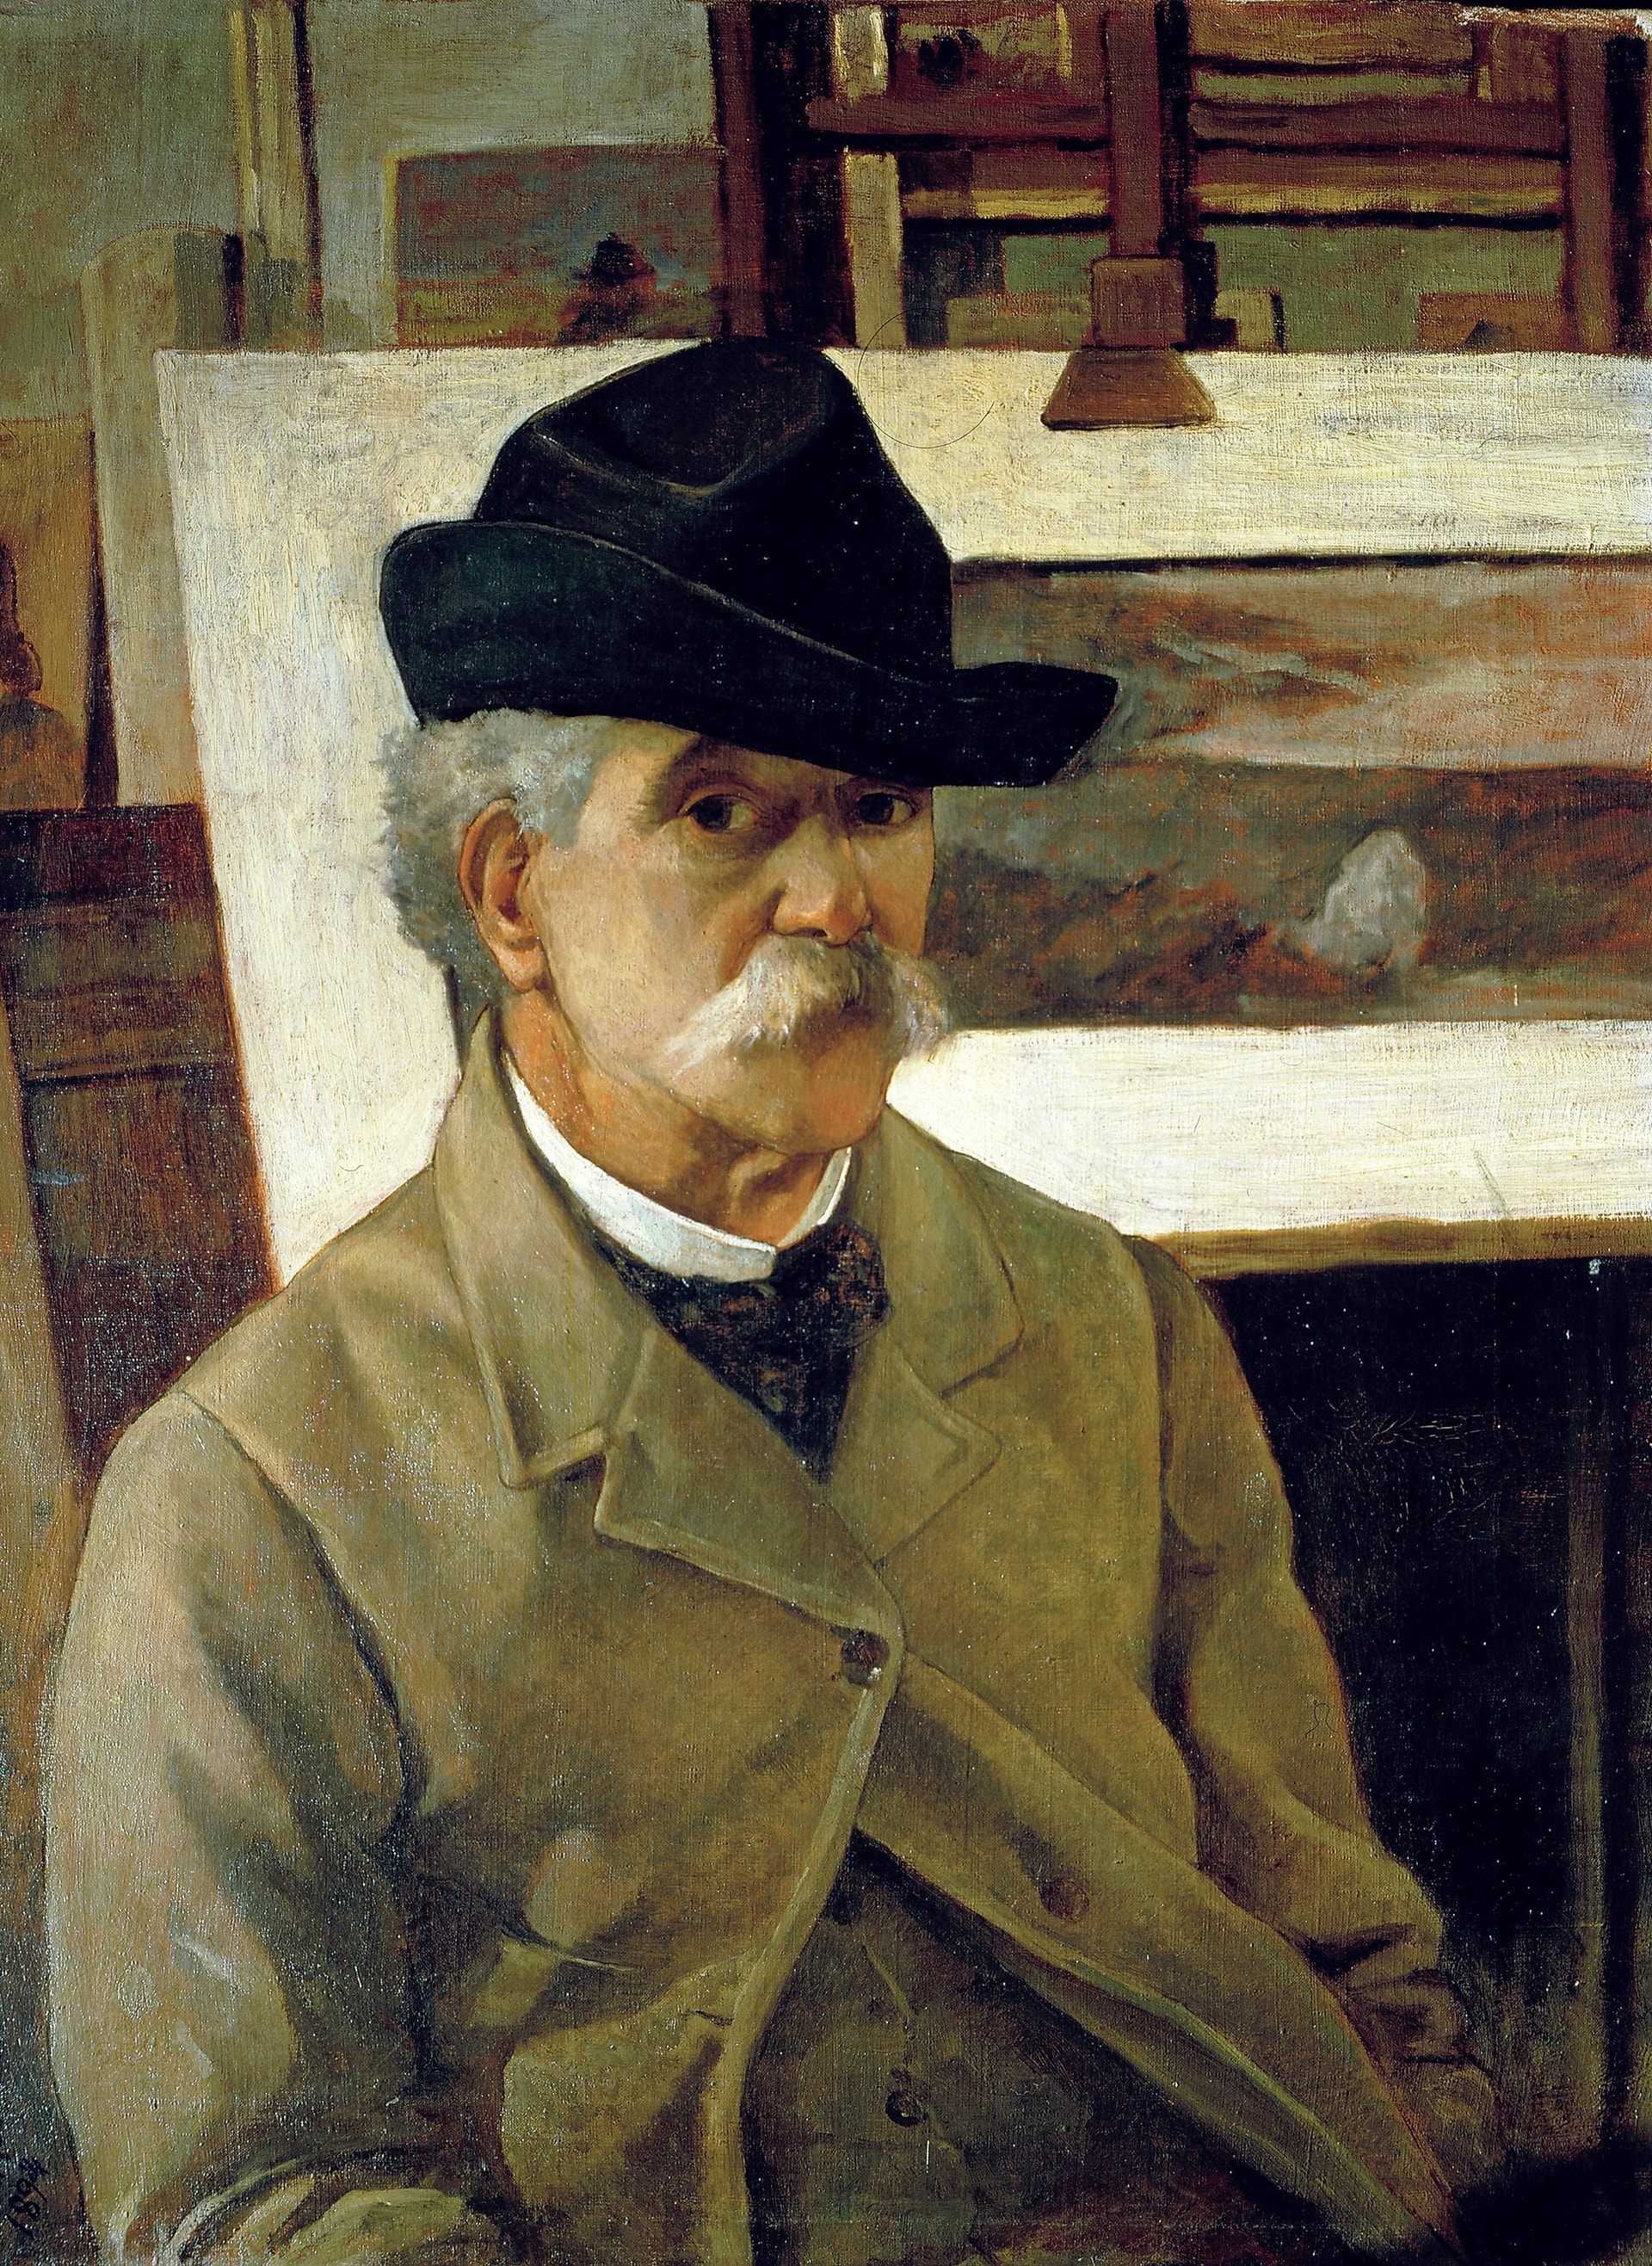 Giovanni Fattori: Autoritratto, 1894. Olio su tela. Istituto Matteucci, Viareggio © Istituto Matteucci, Viareggio 